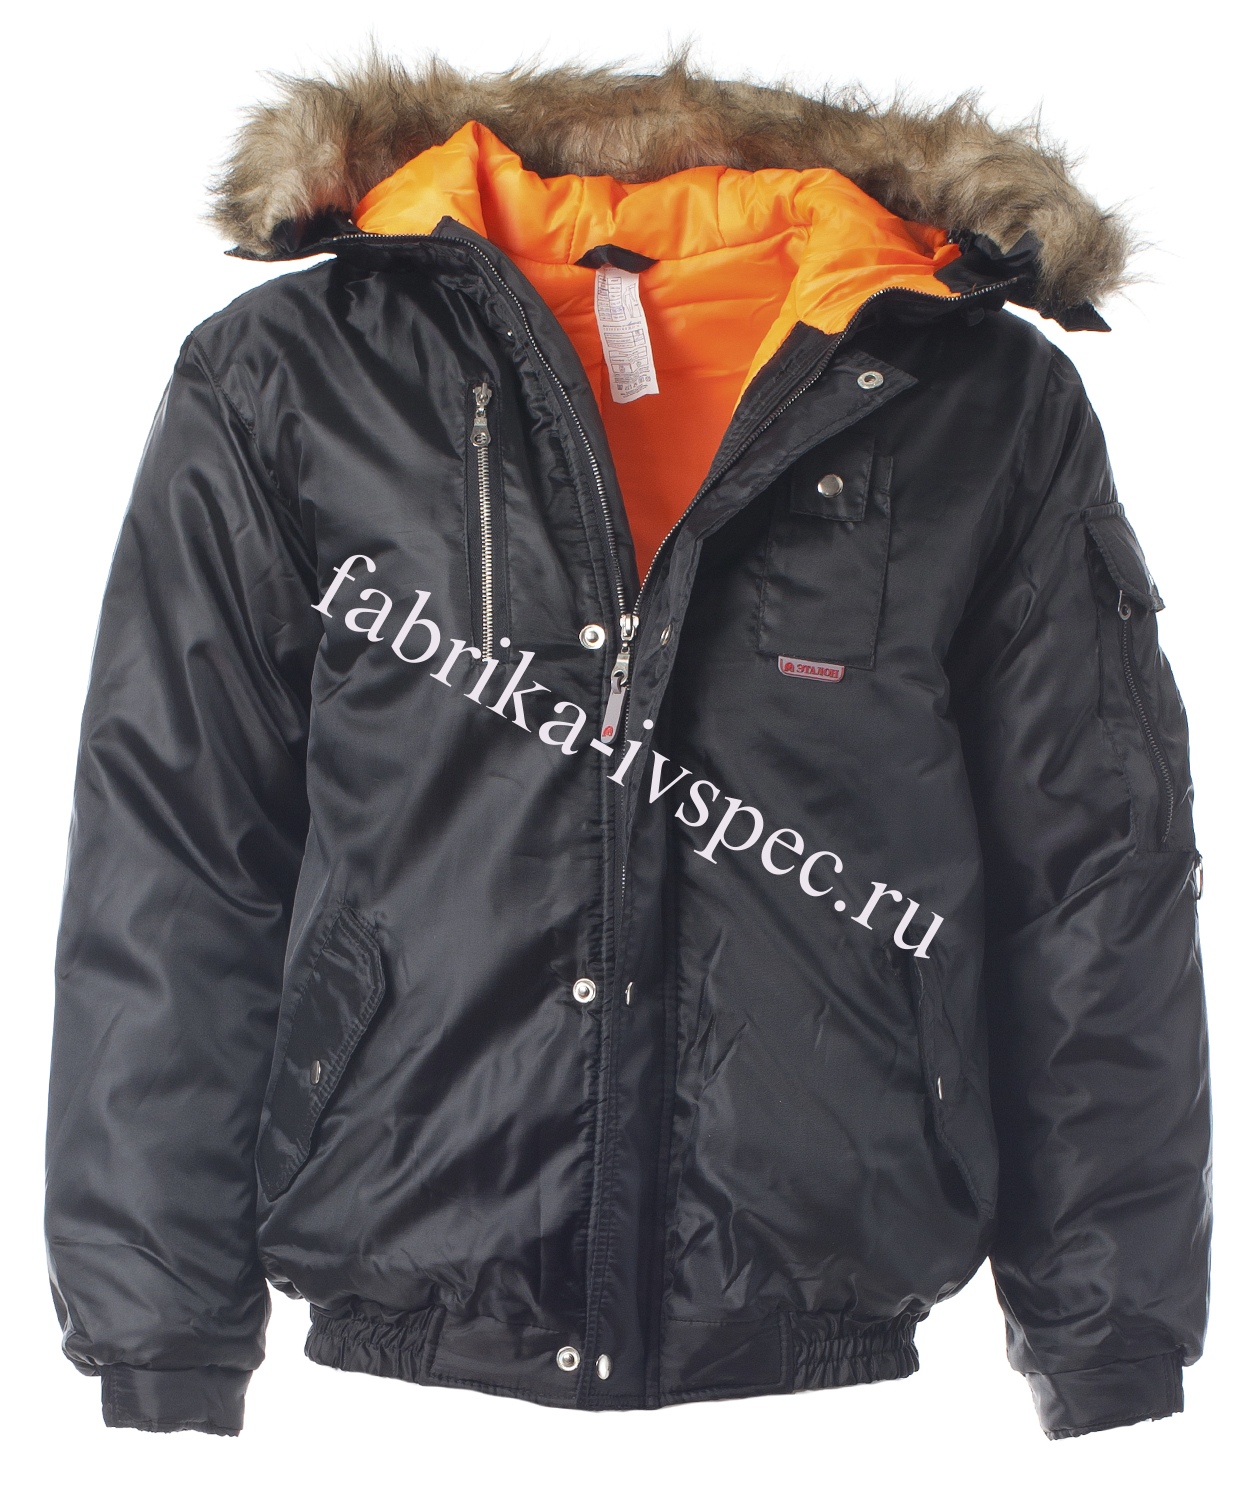 Зимняя куртка "Аляска" (черная, на резинке)